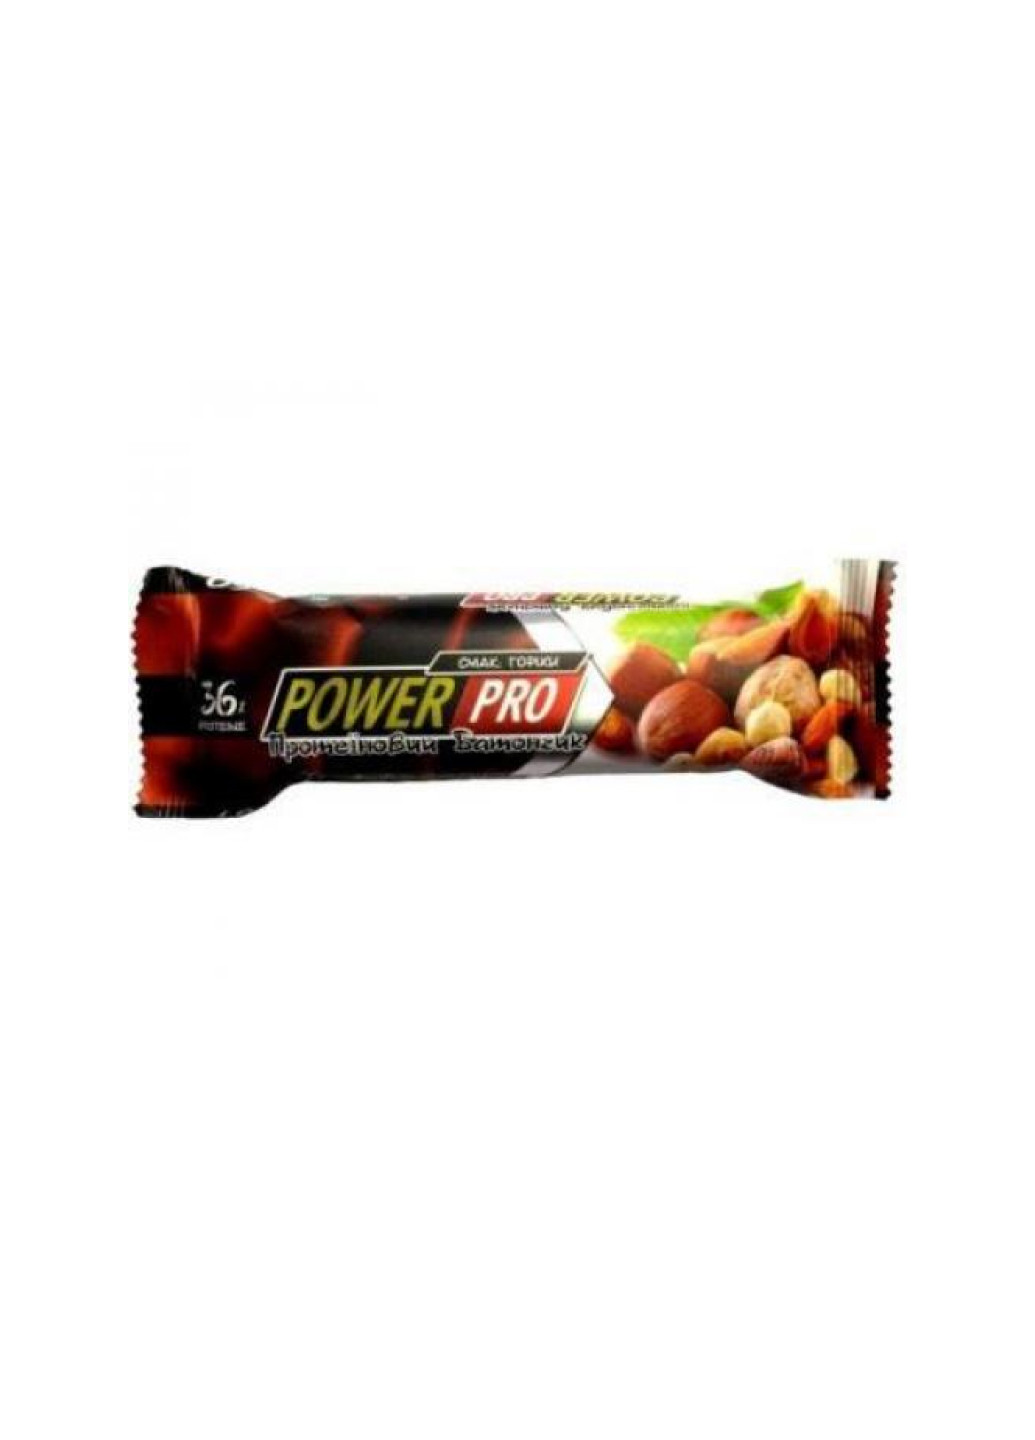 Диетическое питание для энергии Protein Bar Nutella 36% 20x60g Yogurt Nut Power Pro (251857843)